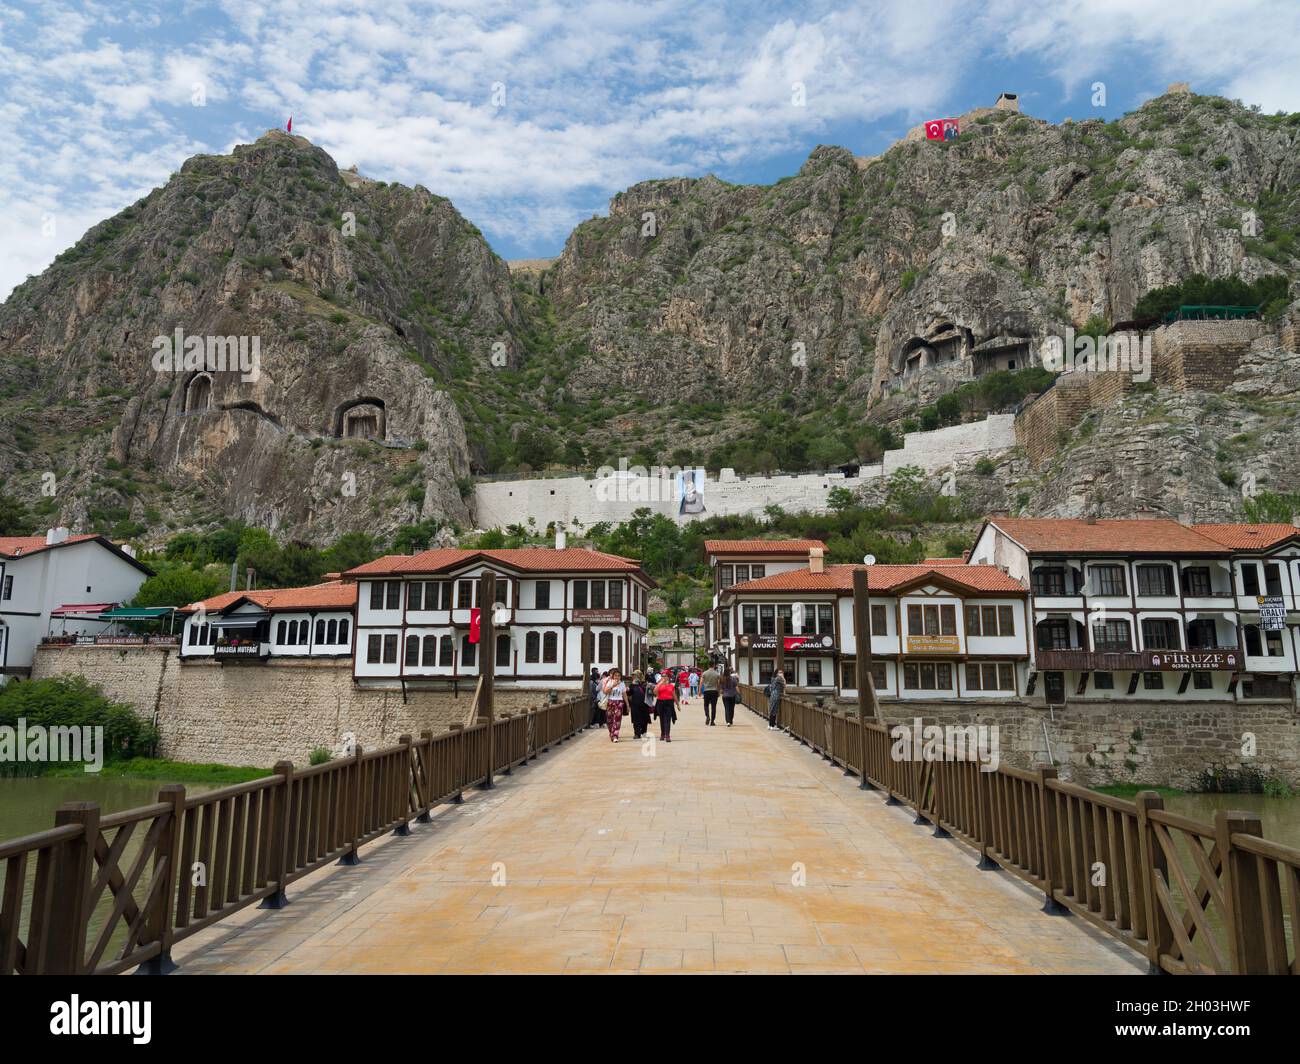 Puente bajo Amasya. Casas históricas y restaurantes junto al río. Imagen del castillo y las tumbas históricas de las rocas. Foto de stock